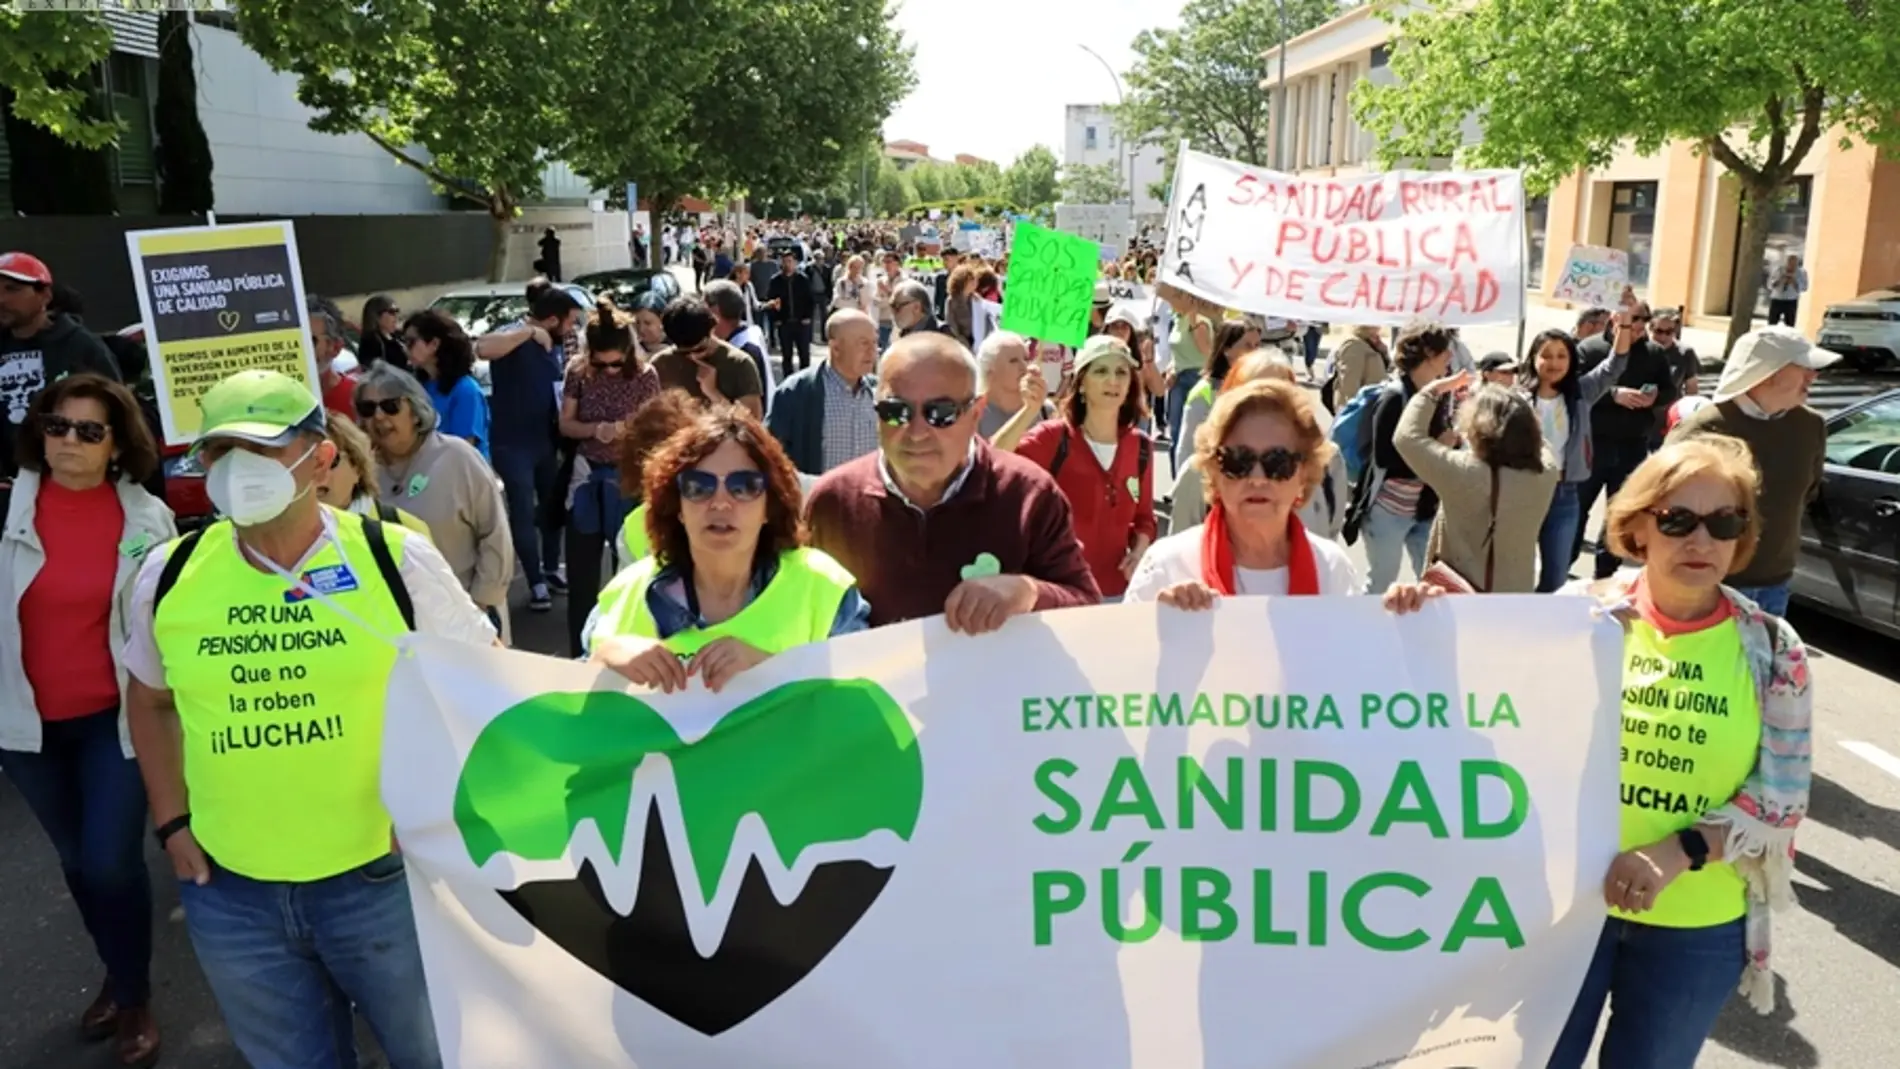 El movimiento 'Extremadura por la Sanidad Pública' convoca concentraciones en ocho localidades este jueves y viernes